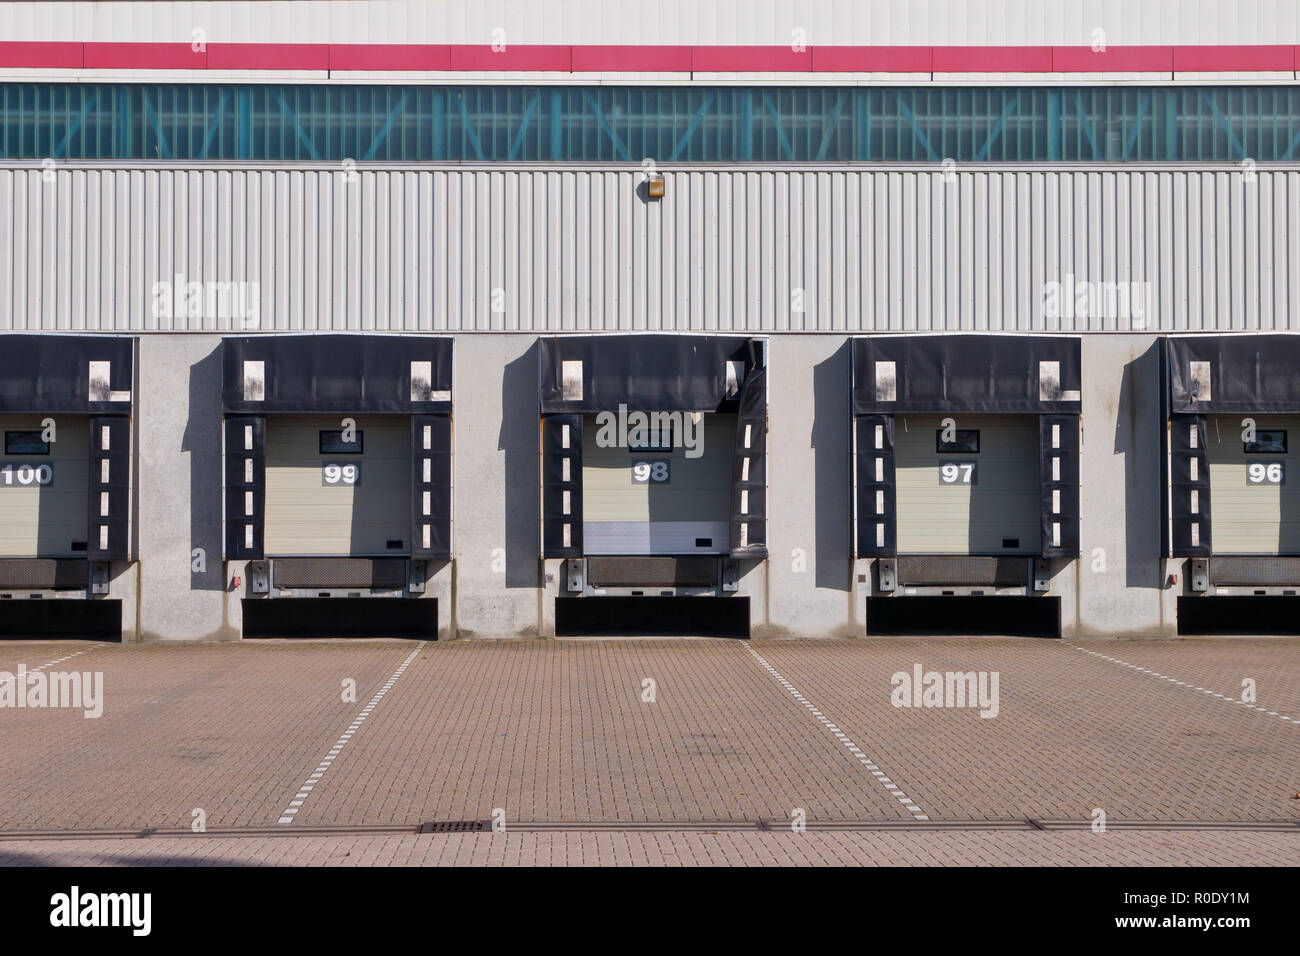 Puerta de carga del muelle de carga vacía como un símbolo de la recesión económica Foto de stock